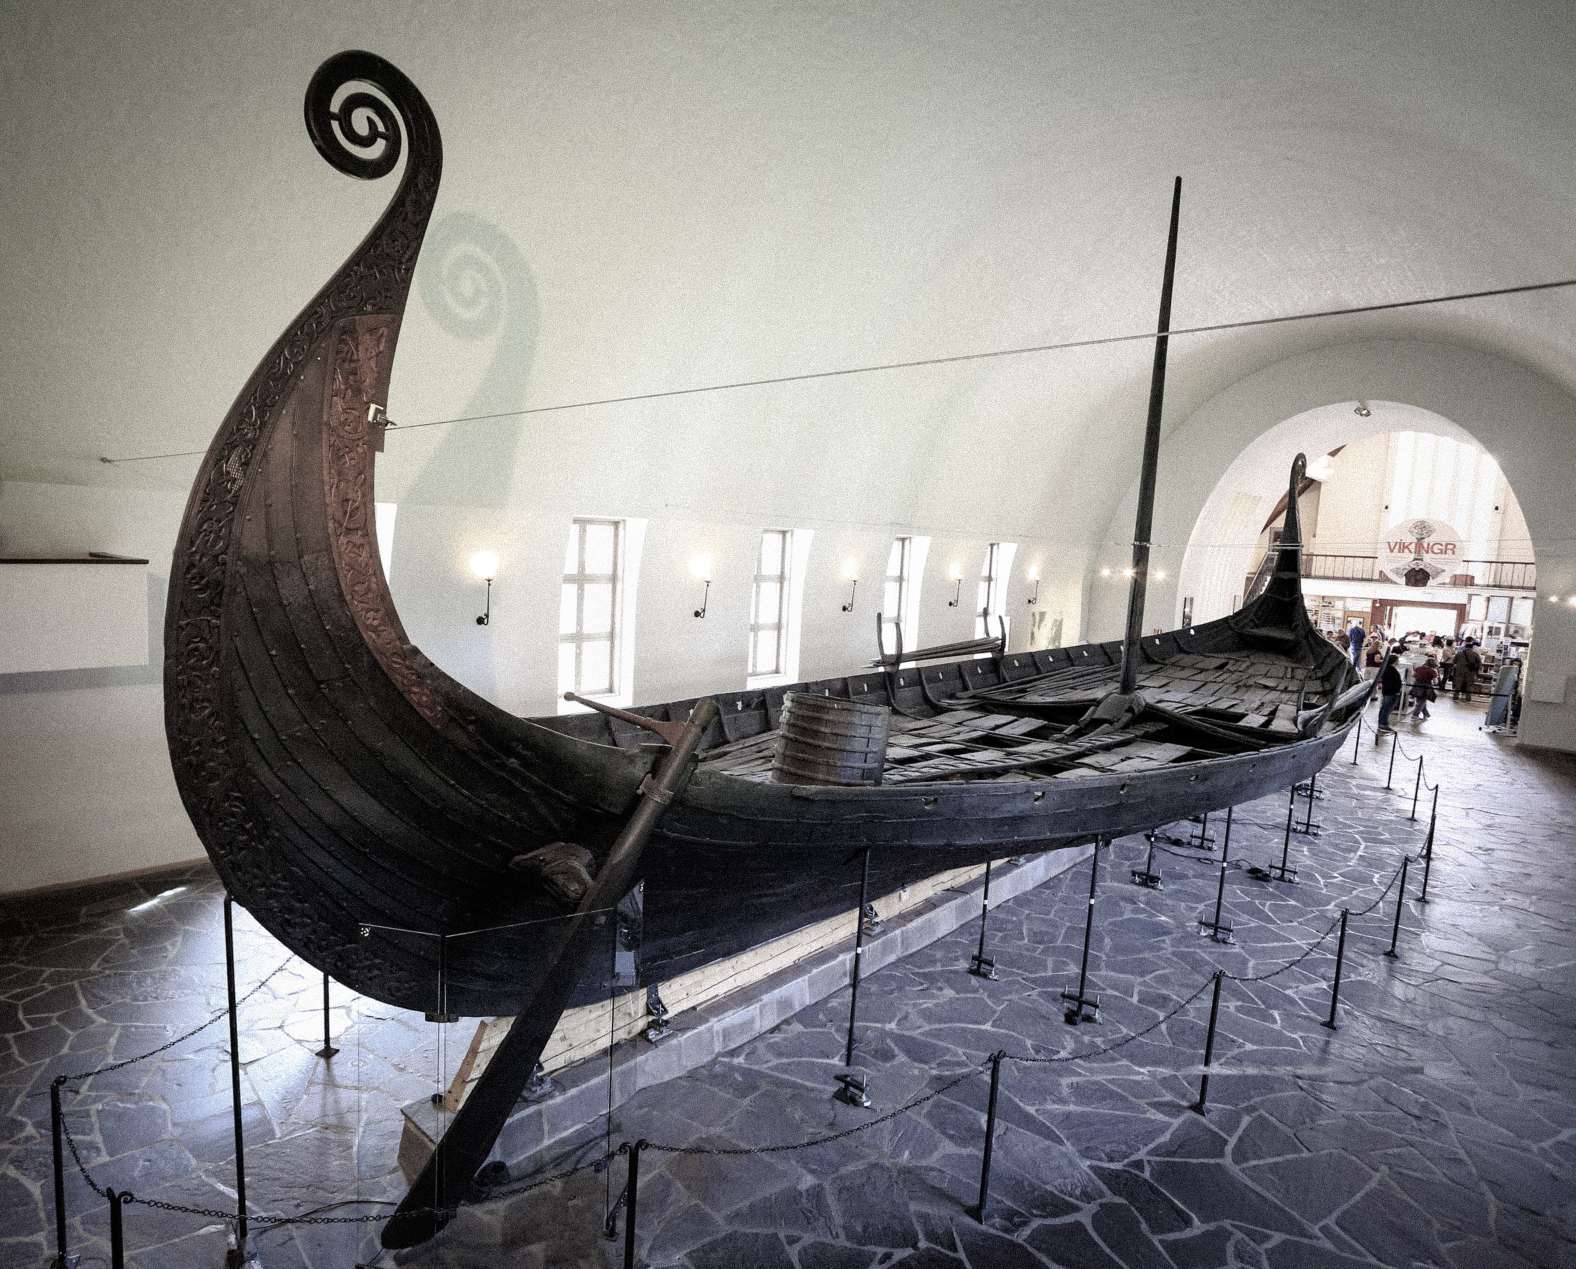 Vikings skib i Vikingeskibsmuseet i byen Oslo i Norge. © Billedkredit: Vlad Ghiea | Licenseret fra DreamsTime.com (redaktionel brug Stock Photo, ID: 155282591)